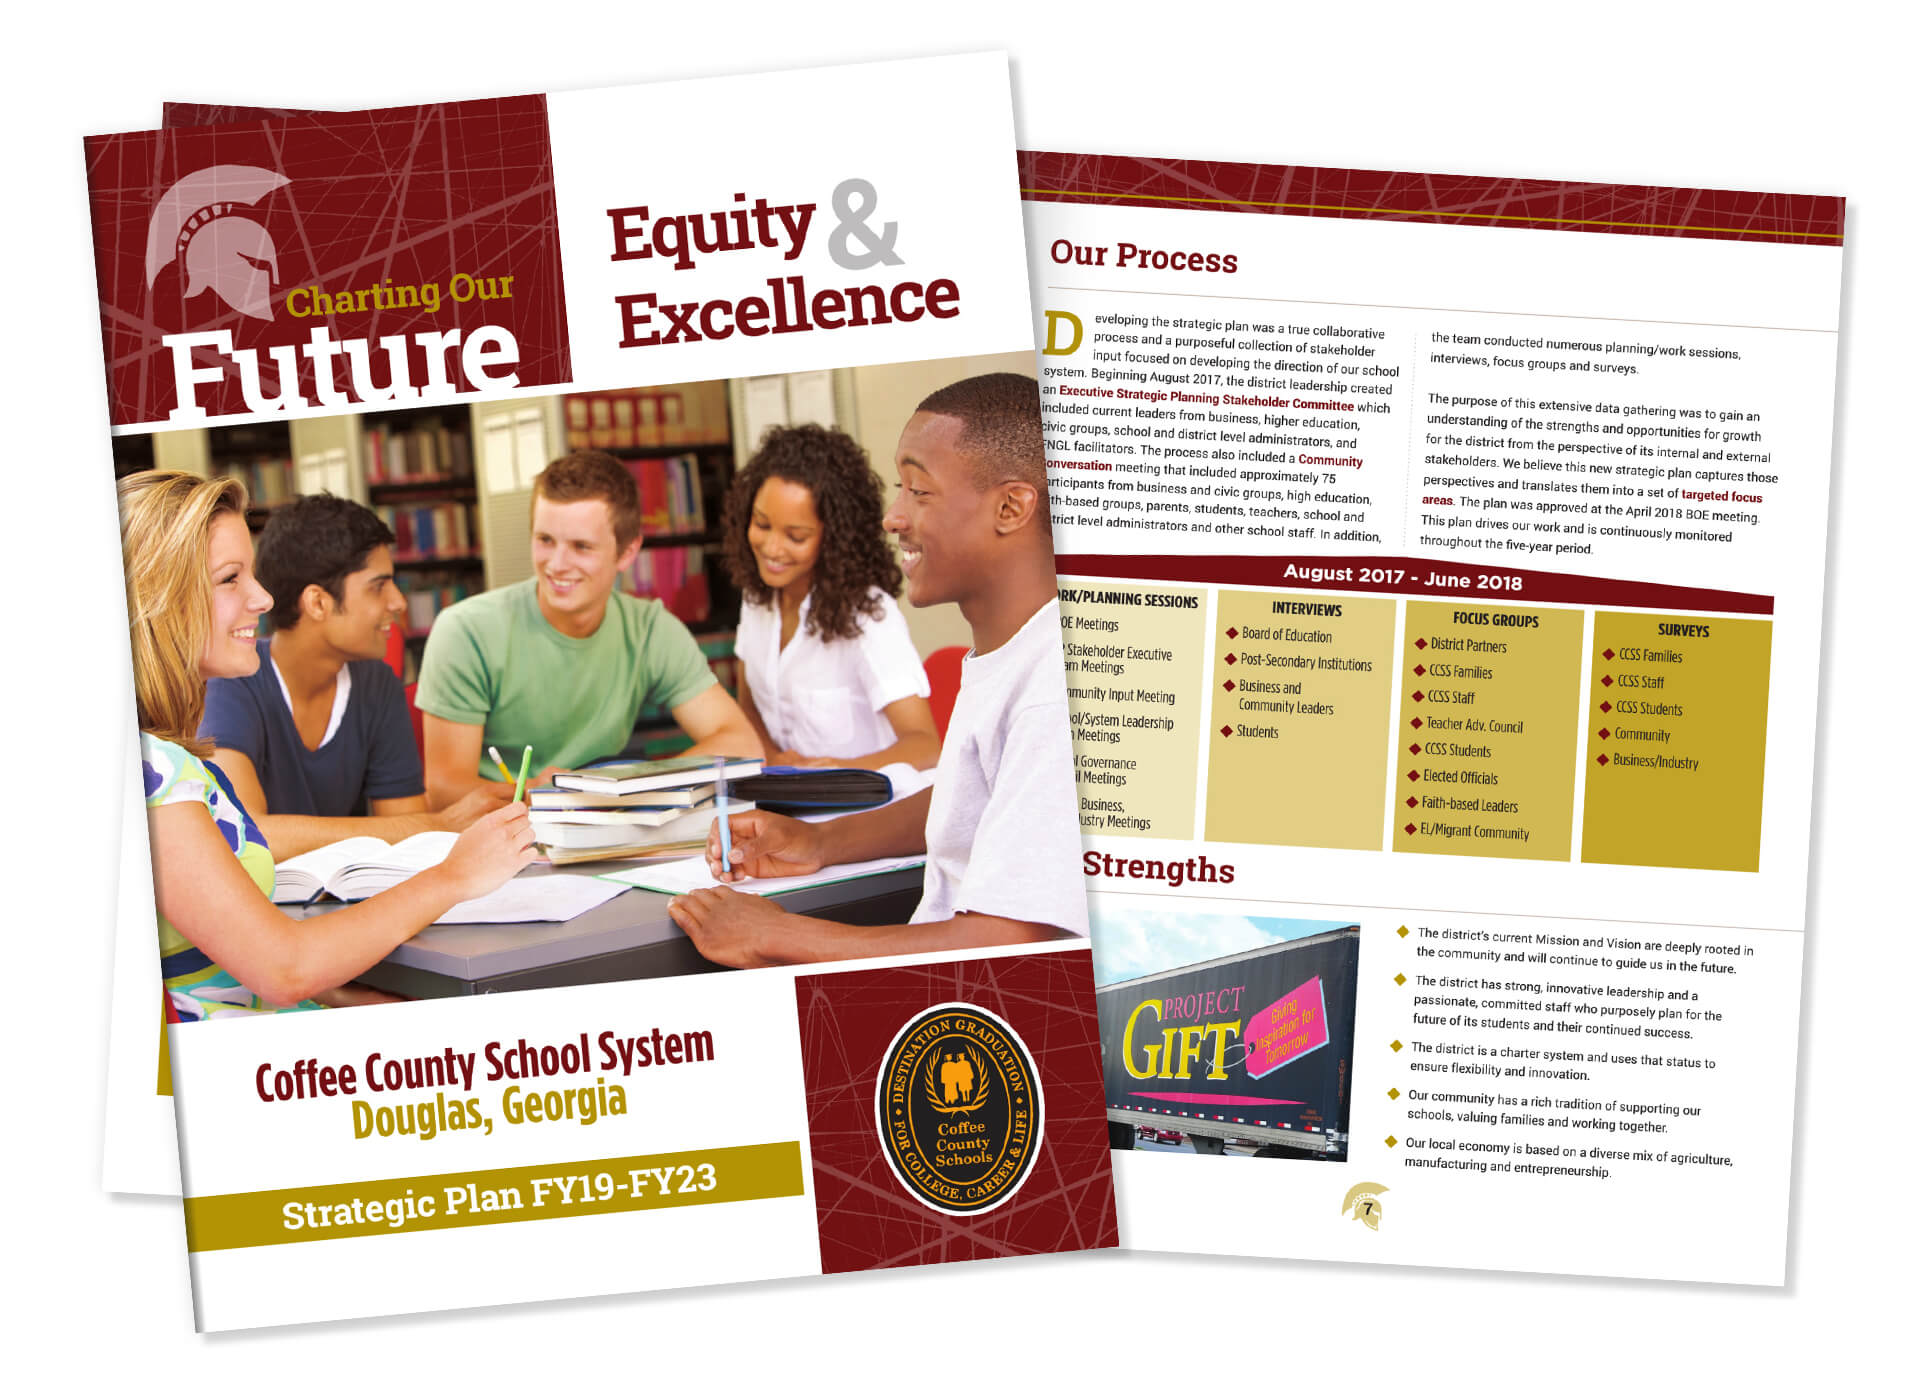 Coffee County School System - Strategic Plan FY19-FY23 